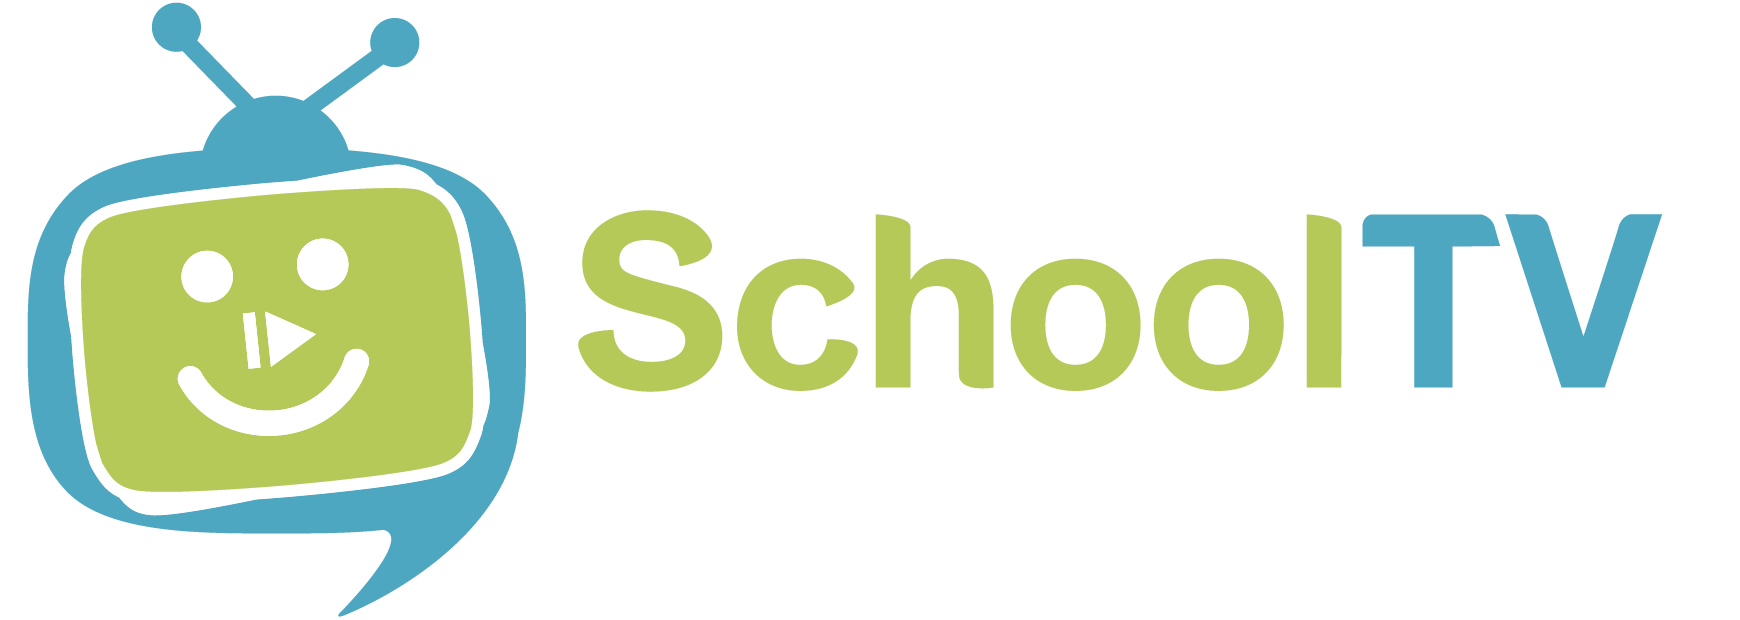 logo.schooltv.png